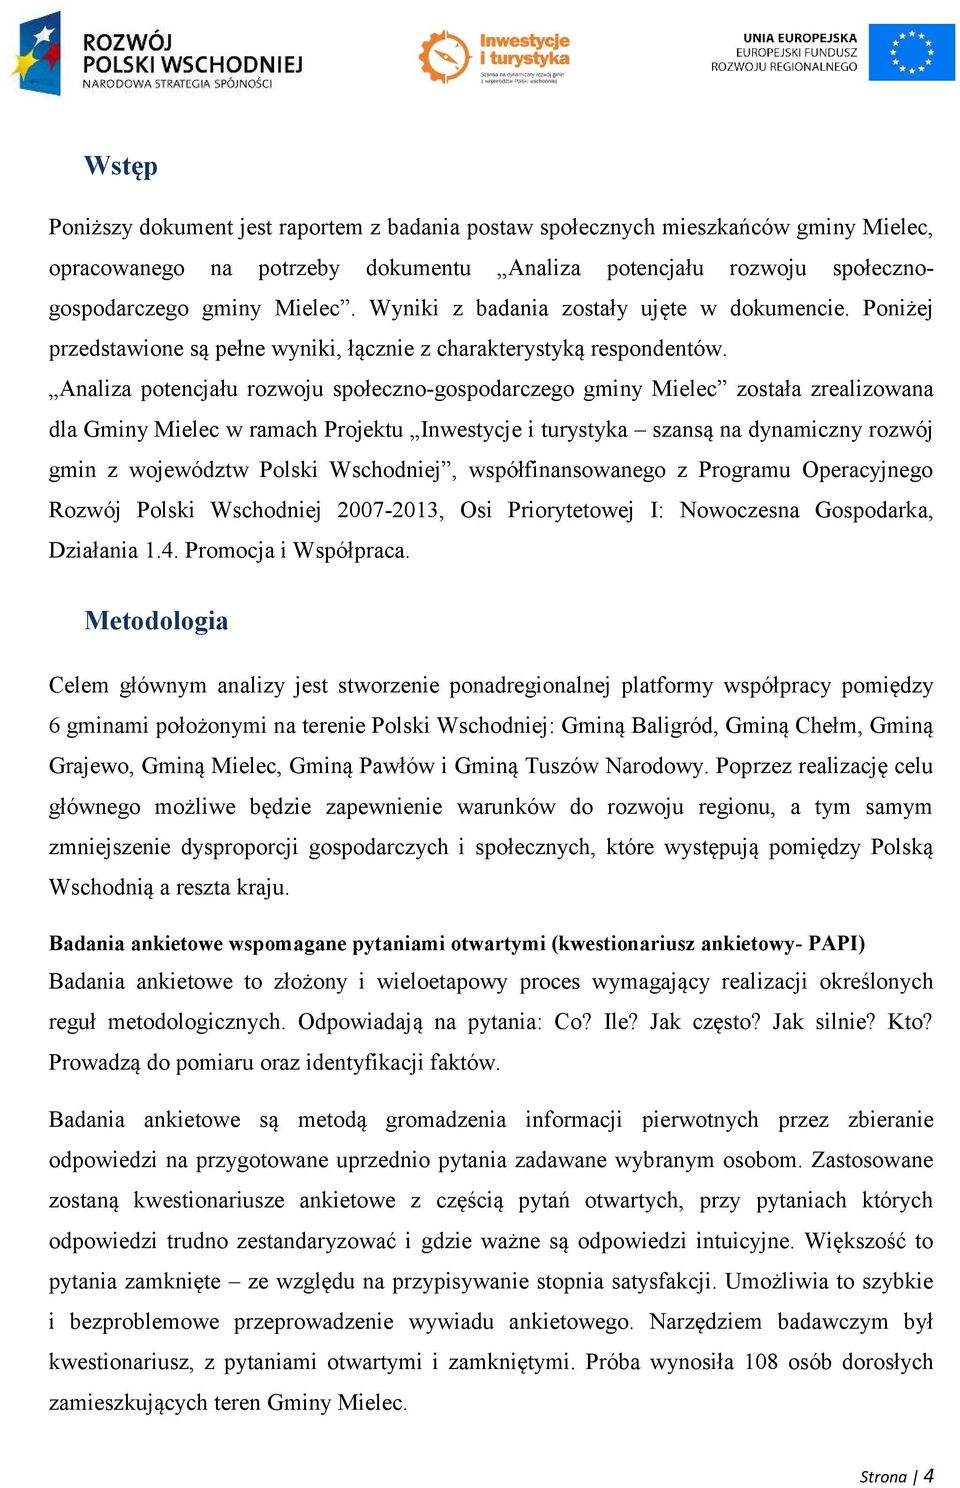 Analiza potencjału rozwoju społeczno-gospodarczego gminy Mielec została zrealizowana dla Gminy Mielec w ramach Projektu Inwestycje i turystyka szansą na dynamiczny rozwój gmin z województw Polski